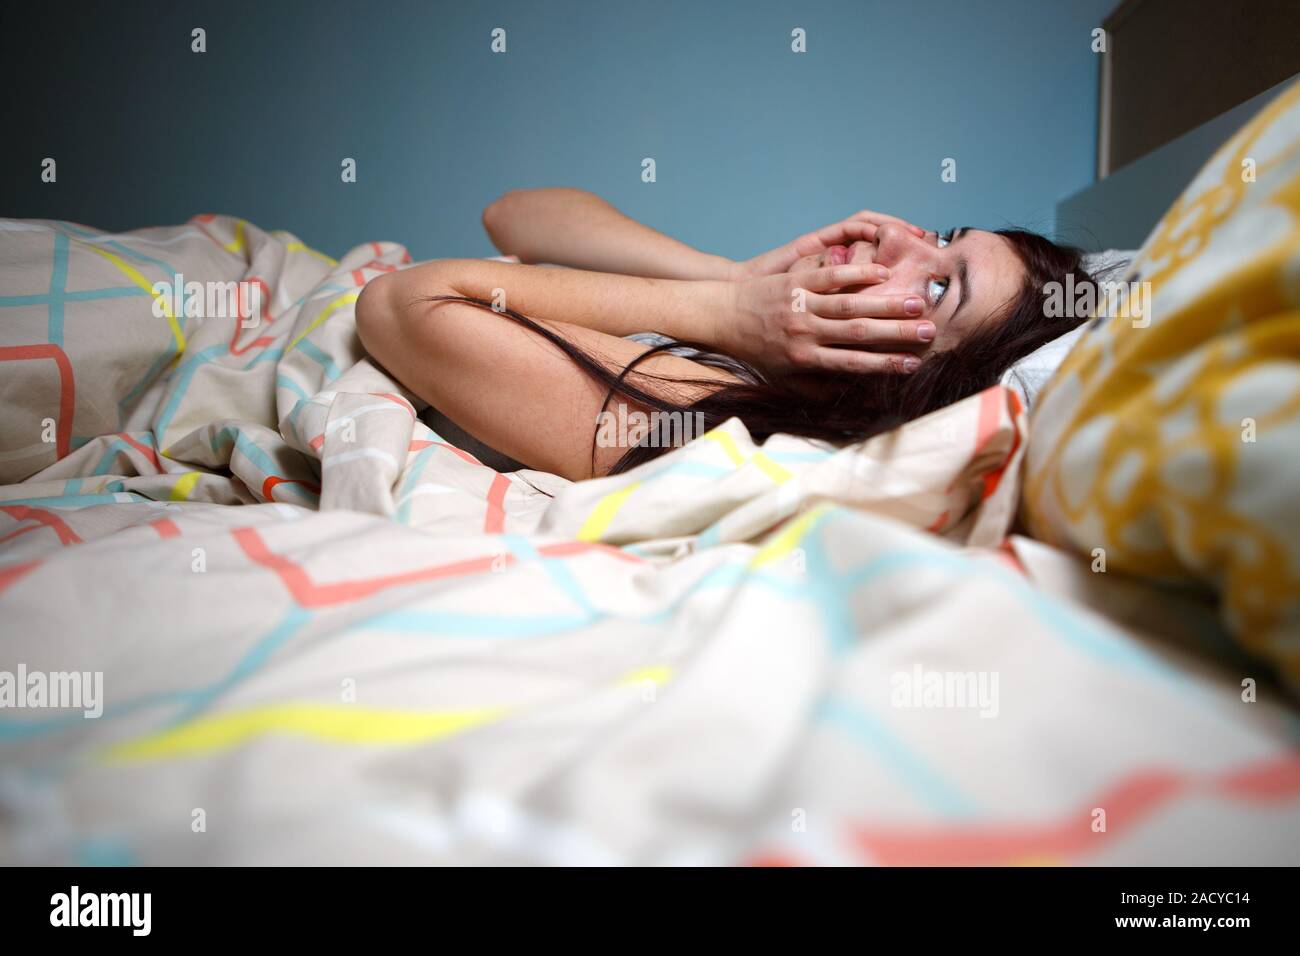 Mujer joven acostado en la cama el sufrimiento con el insomnio, el estrés, el vecino ruidoso sonido de alarma, evitar el concepto del sueño Foto de stock